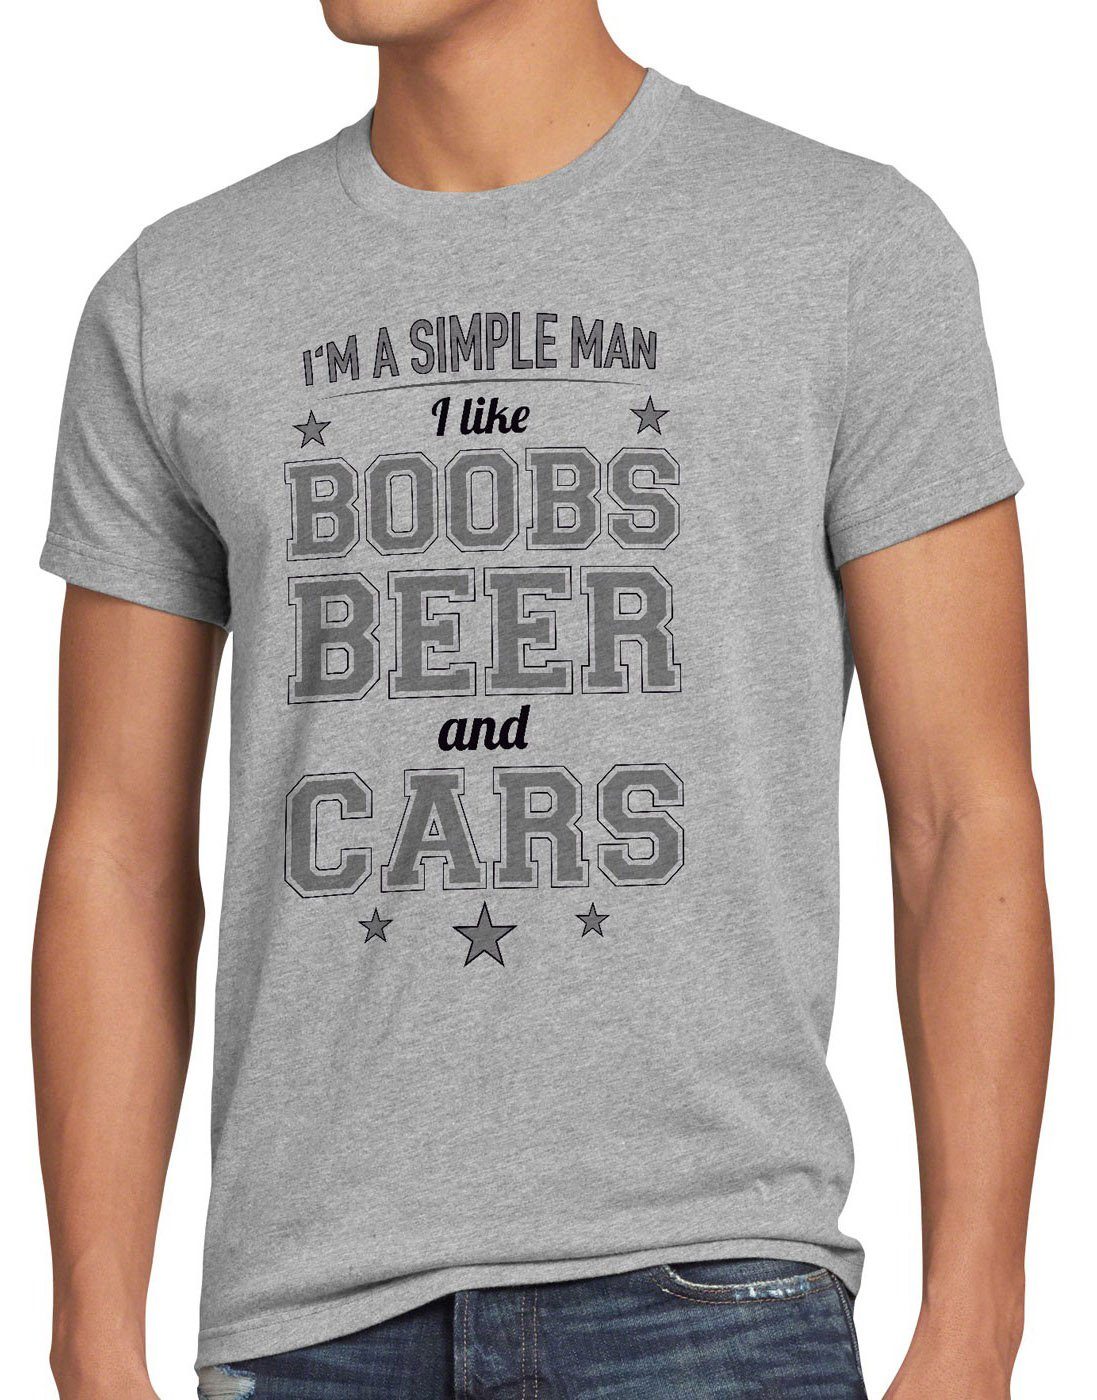 style3 Print-Shirt Herren T-Shirt Simple Man boobs beer car auto bier titten funshirt tuning spruch grau meliert